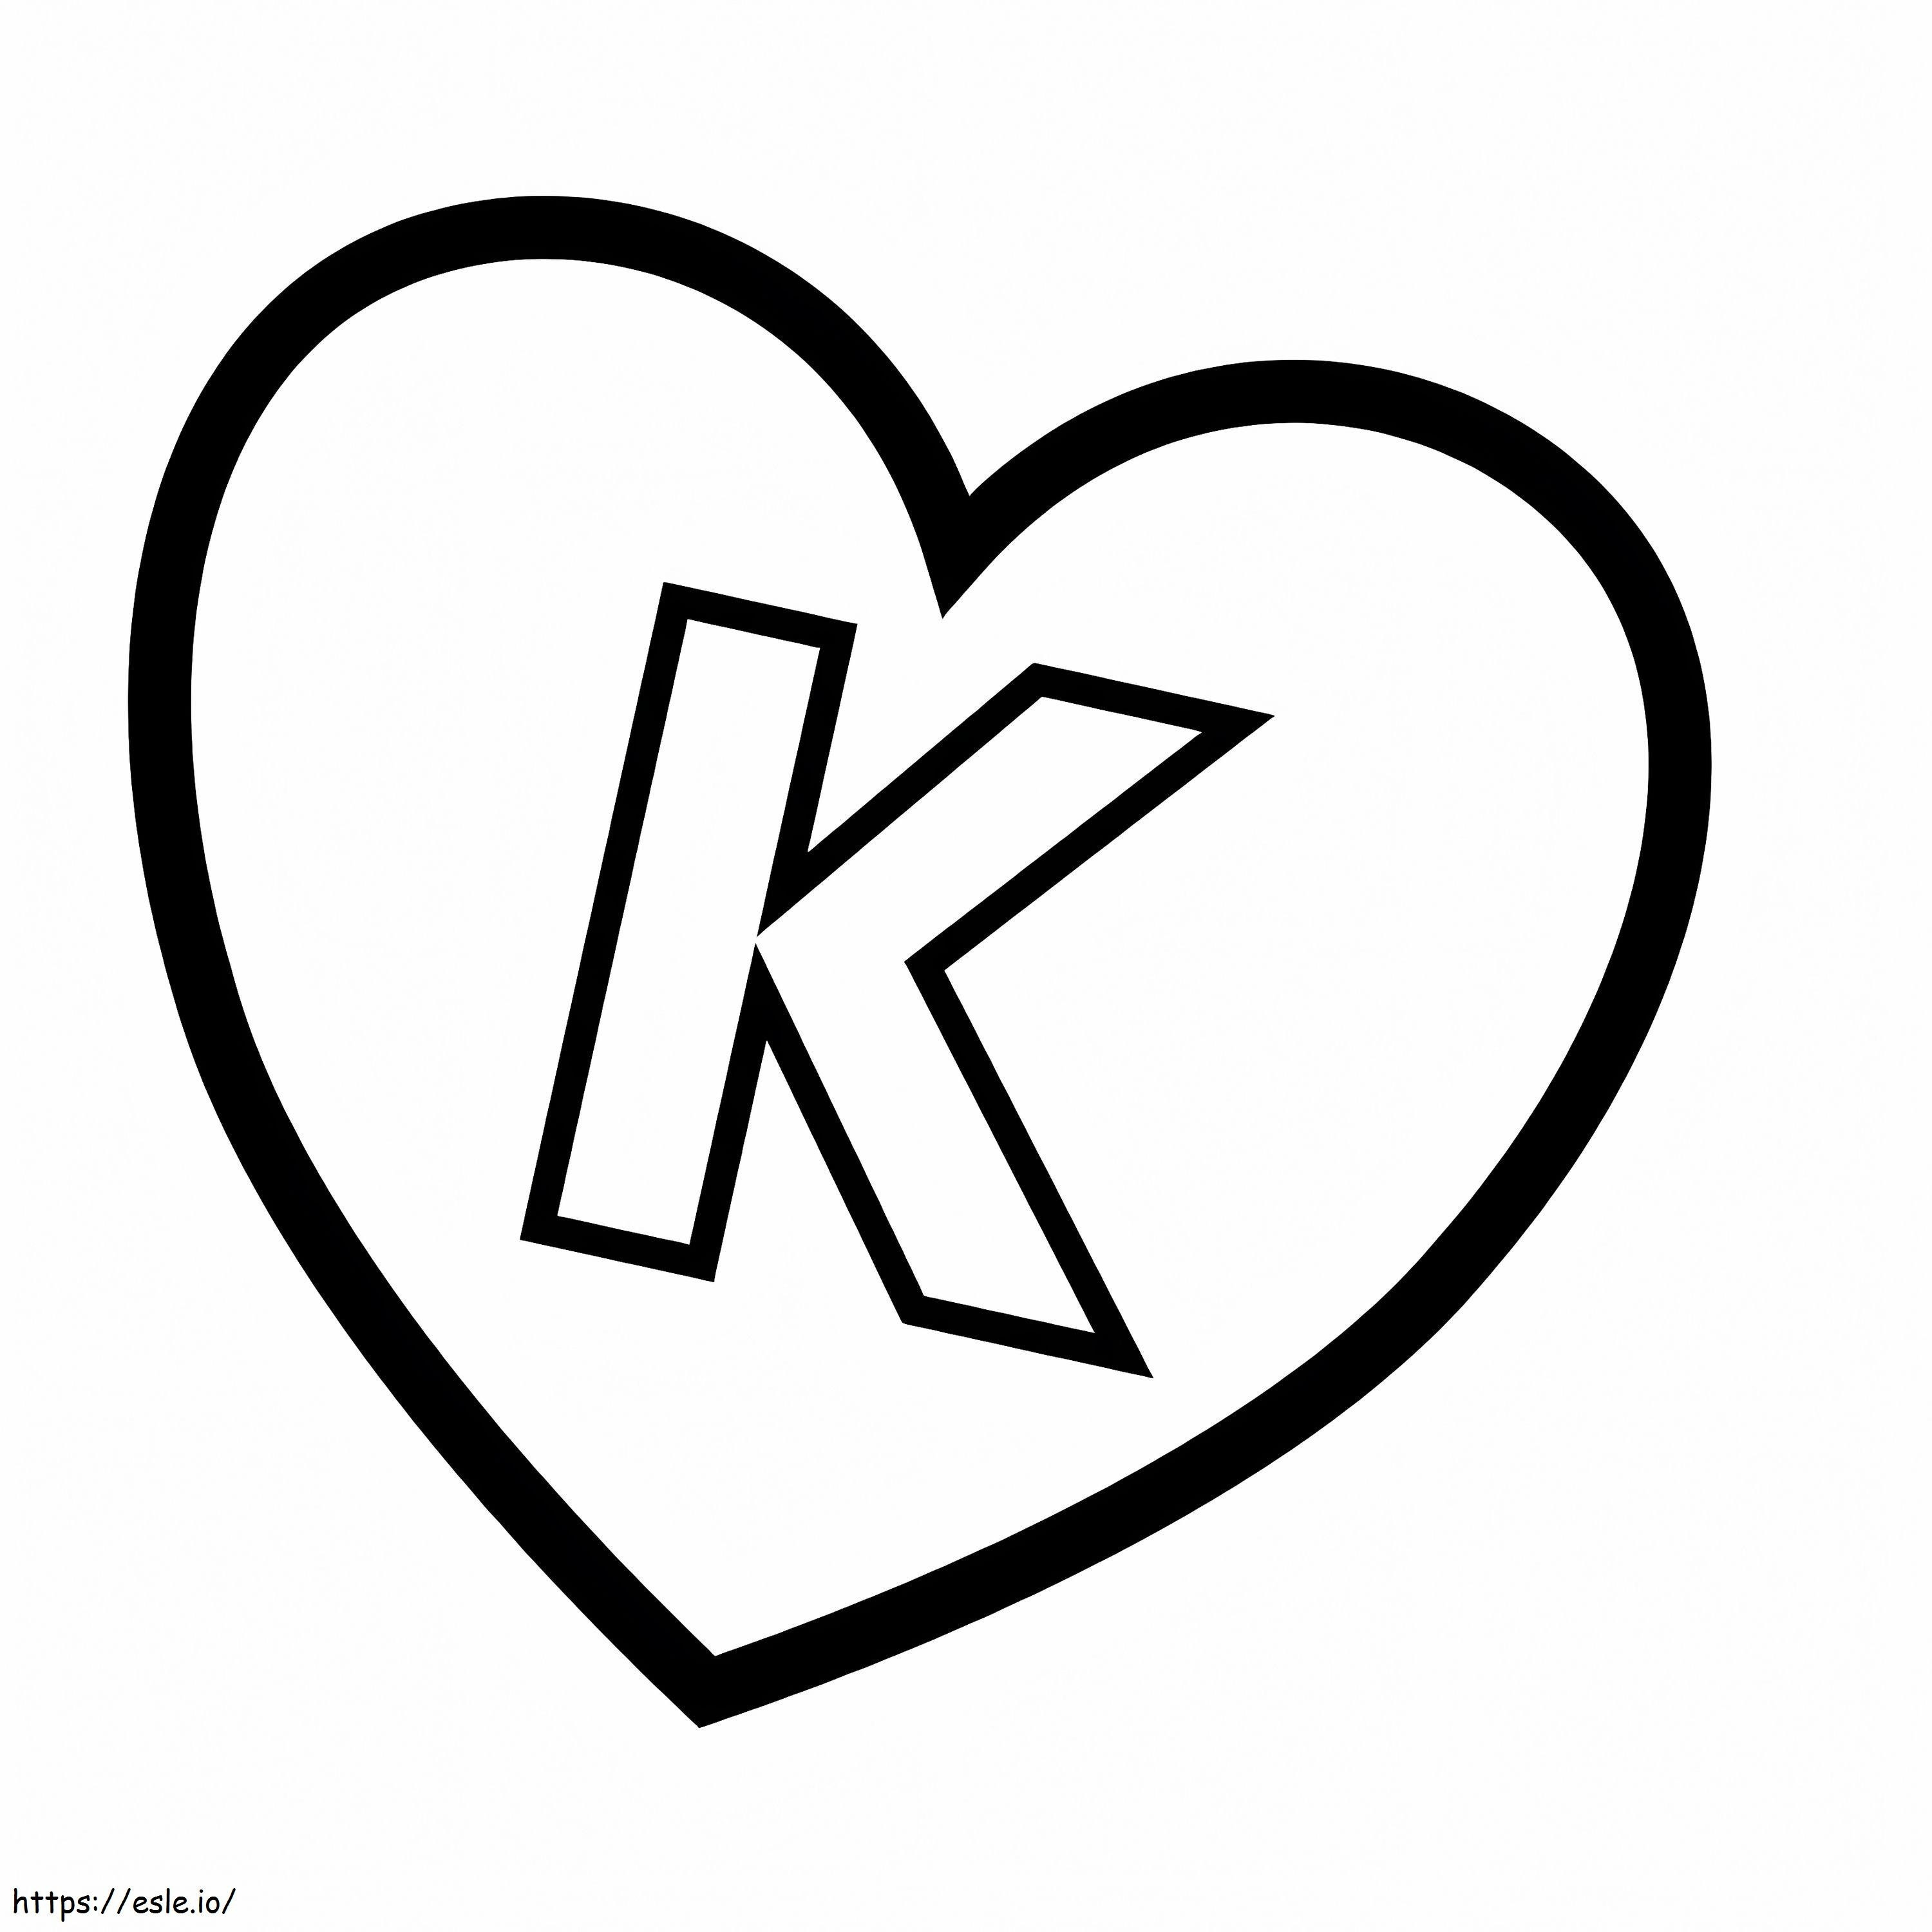 Letra K en corazón para colorear